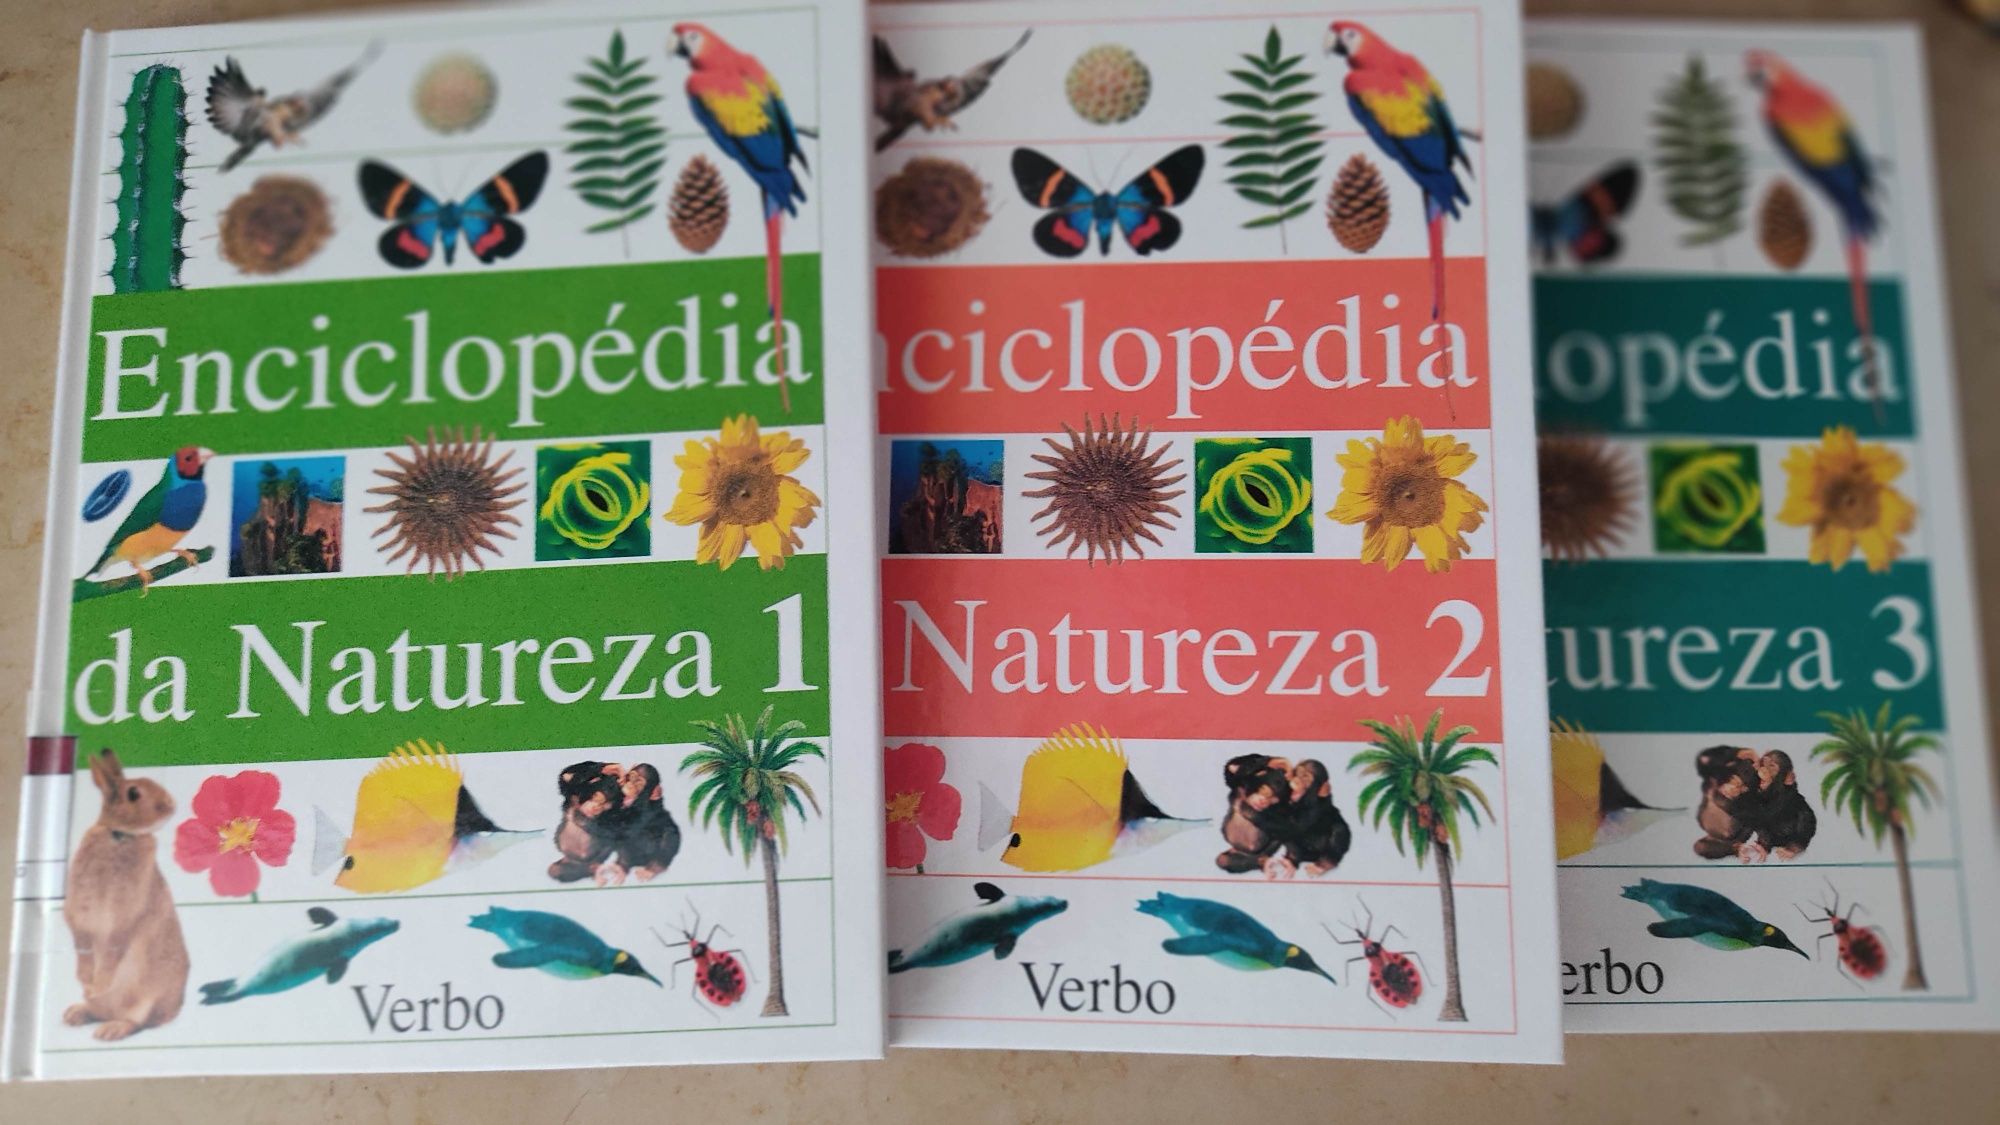 3 volumes novos da maravilhosa Enciclopédia da Natureza  -Verbo